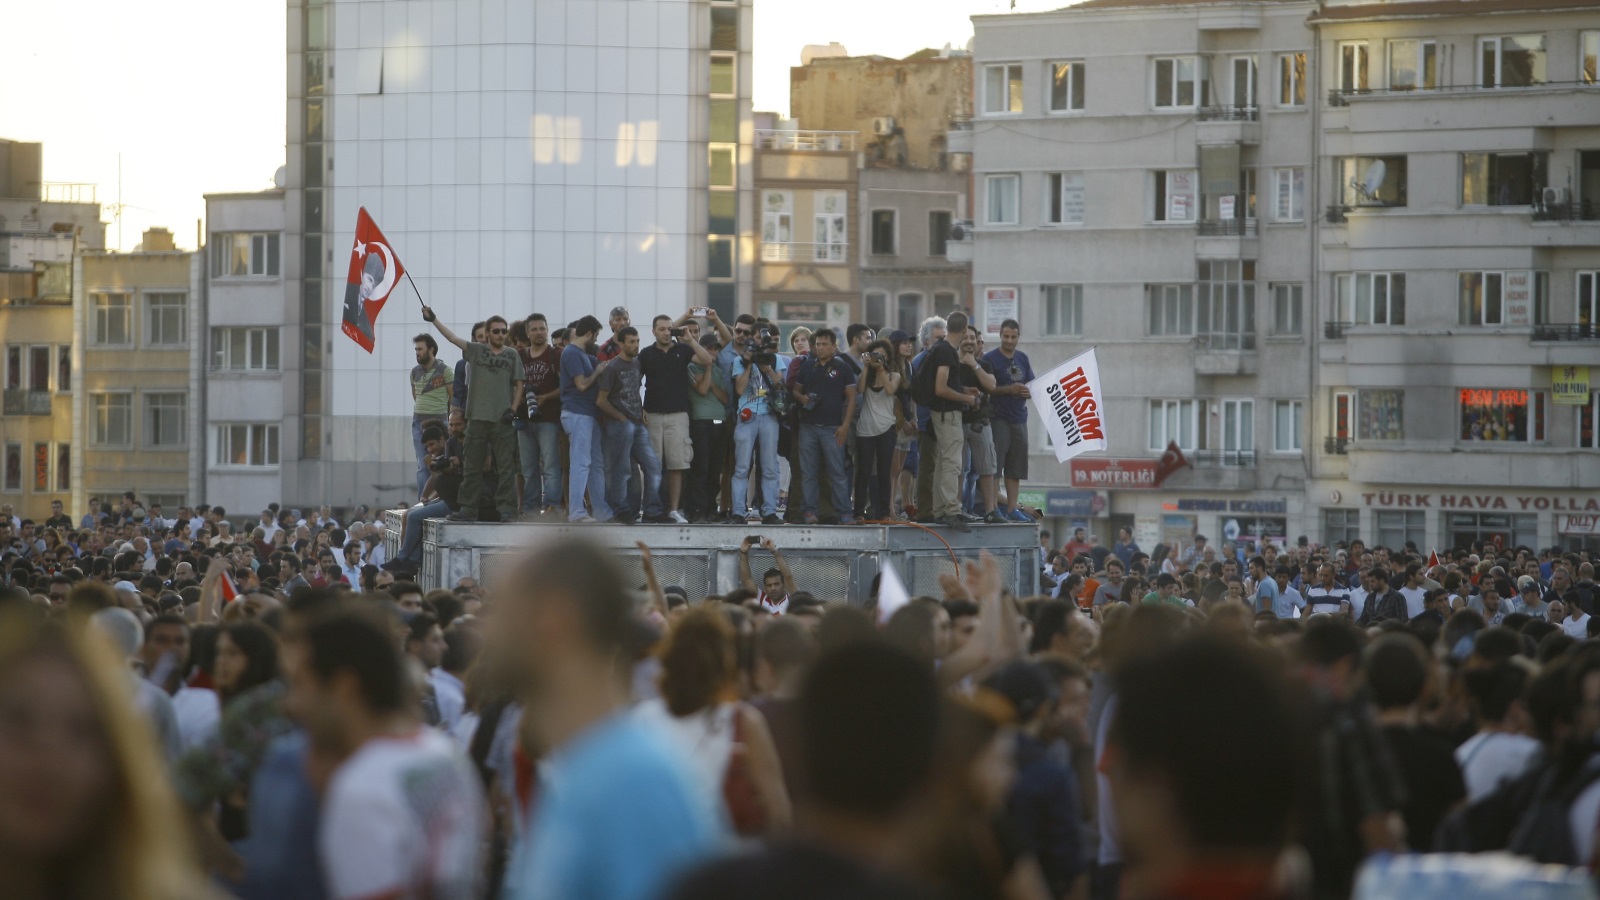 ‪احتجاج عام 2013 في ساحة تقسيم على مشروع لبلدية إسطنبول لإزالة حديقة غيزي‬ (غيتي)